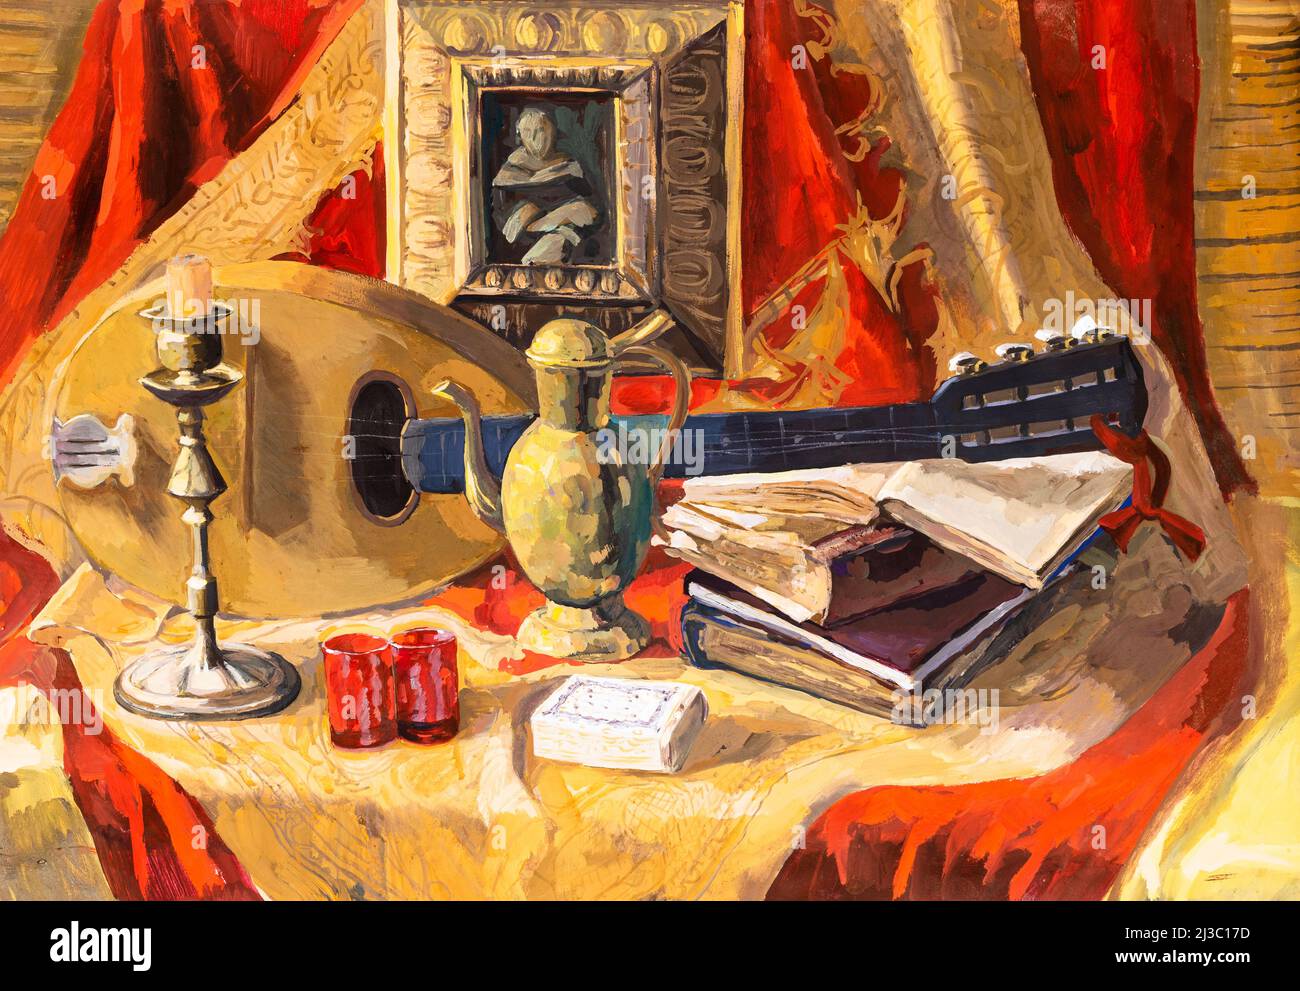 Stillleben mit Mandoline, alten Büchern, einem Gemälde, einem Kerzenständer und einem Krug auf einem roten Vorhang mit gelbem Muster, handbemalt in Tempera auf Papier Stockfoto